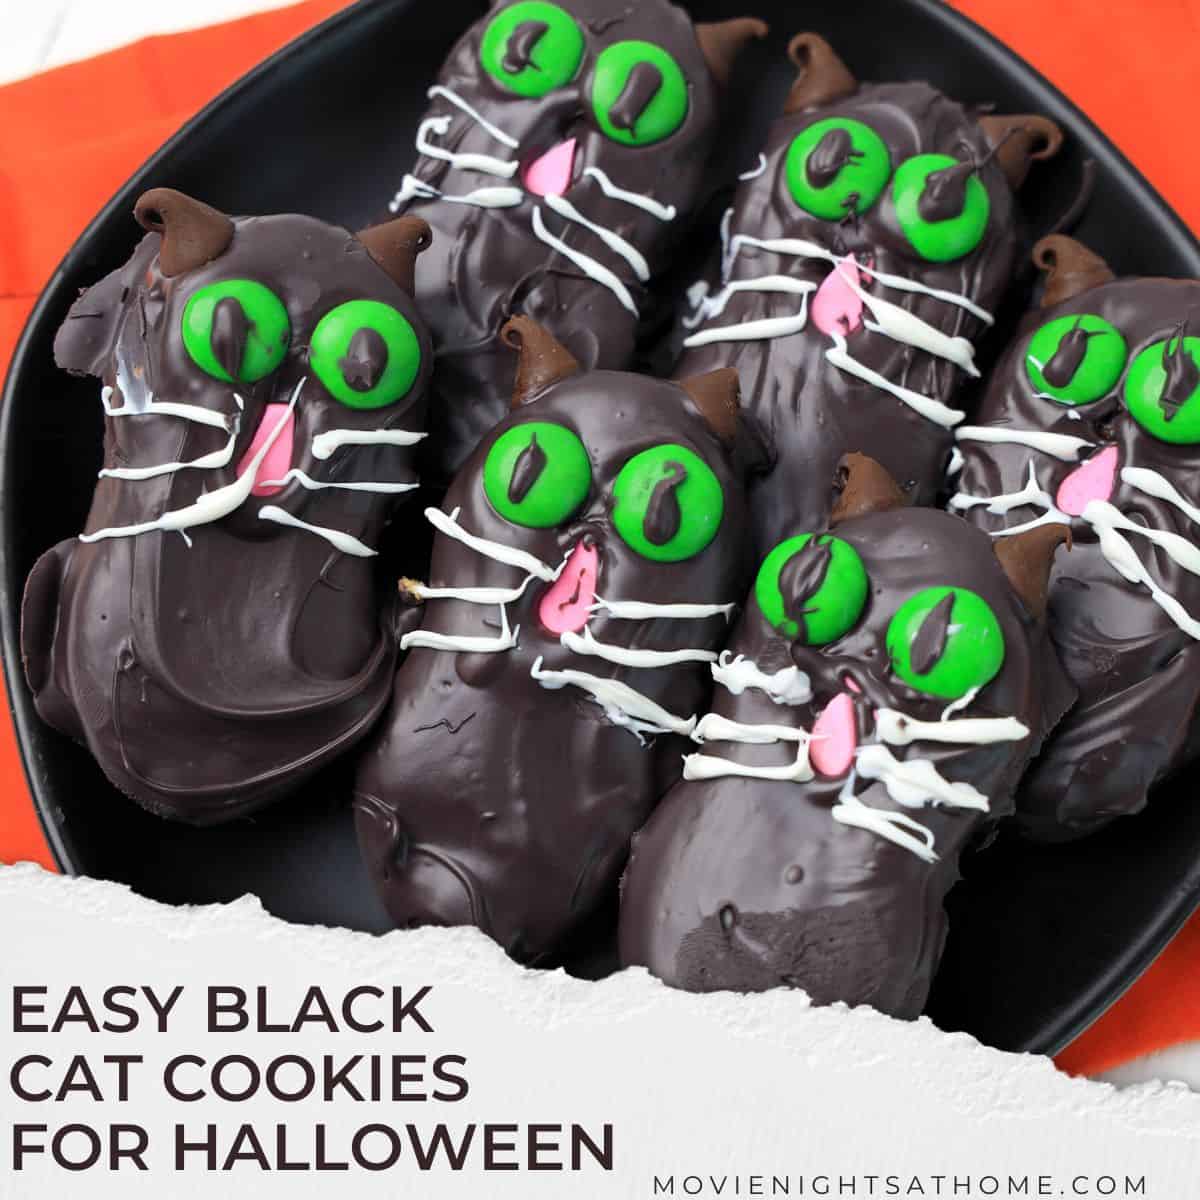 Hocus Pocus Cookies: No-Bake Binx Black Cat Cookies